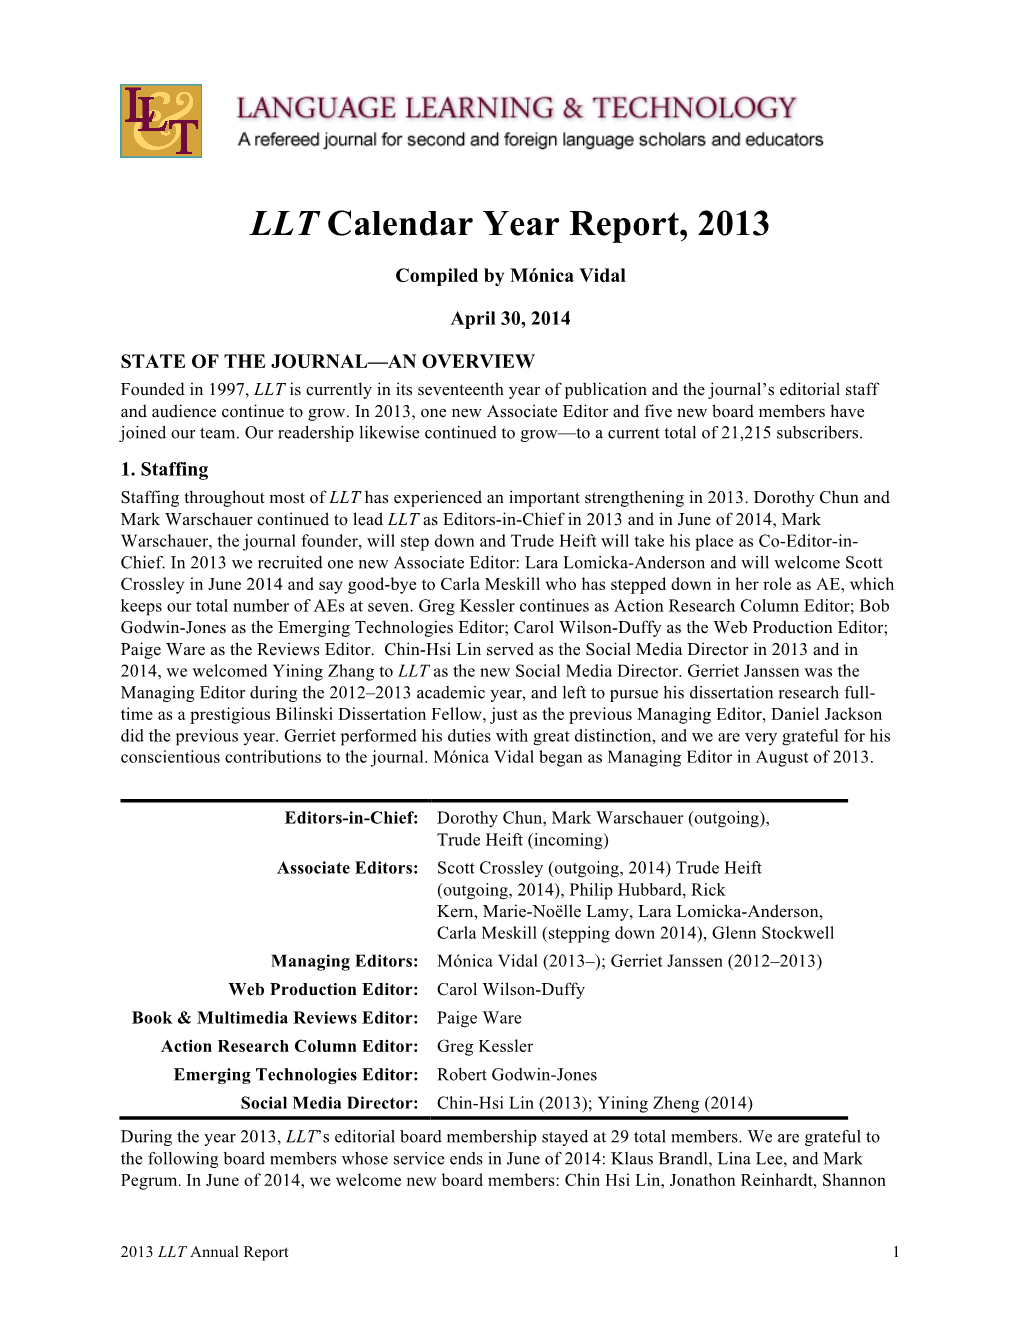 2013 LLT Annual Report.Pdf